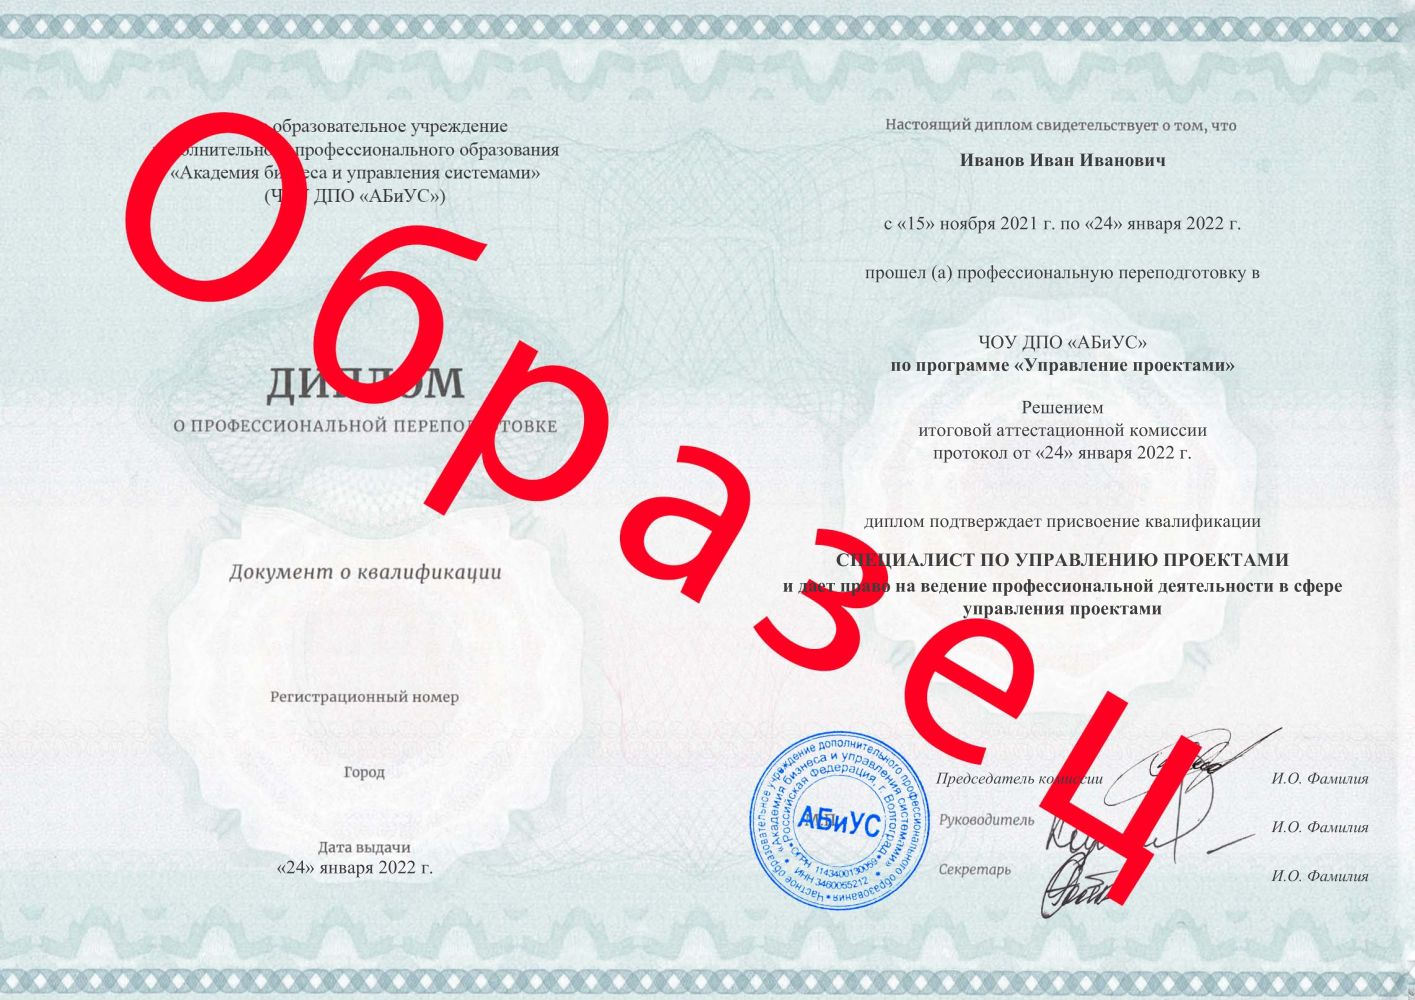 Диплом Управление проектами 260 часов 14625 руб.